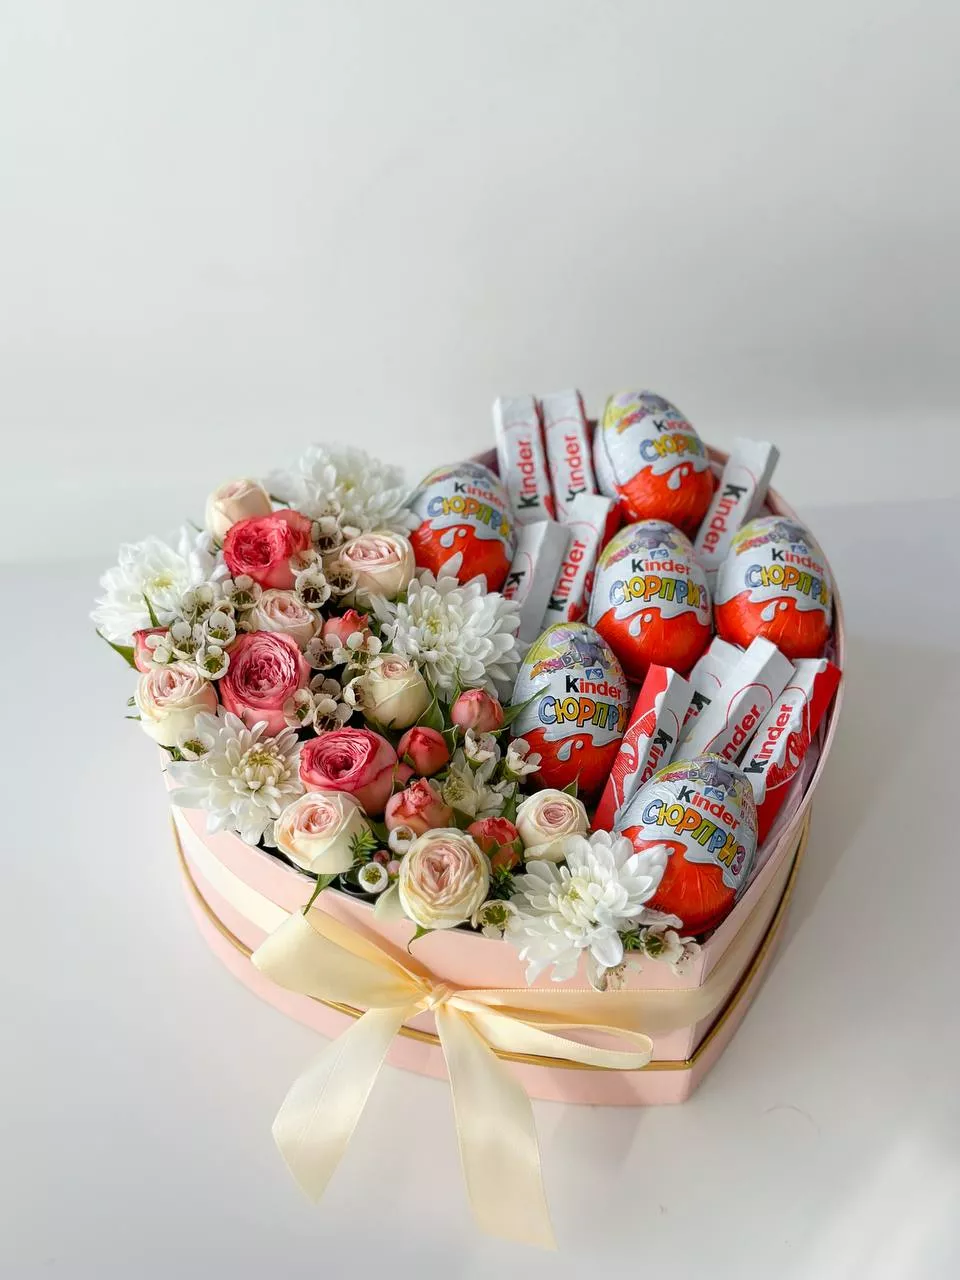 Композиция "Darling" розы и хризантемы со сладостями в коробке в форме сердца